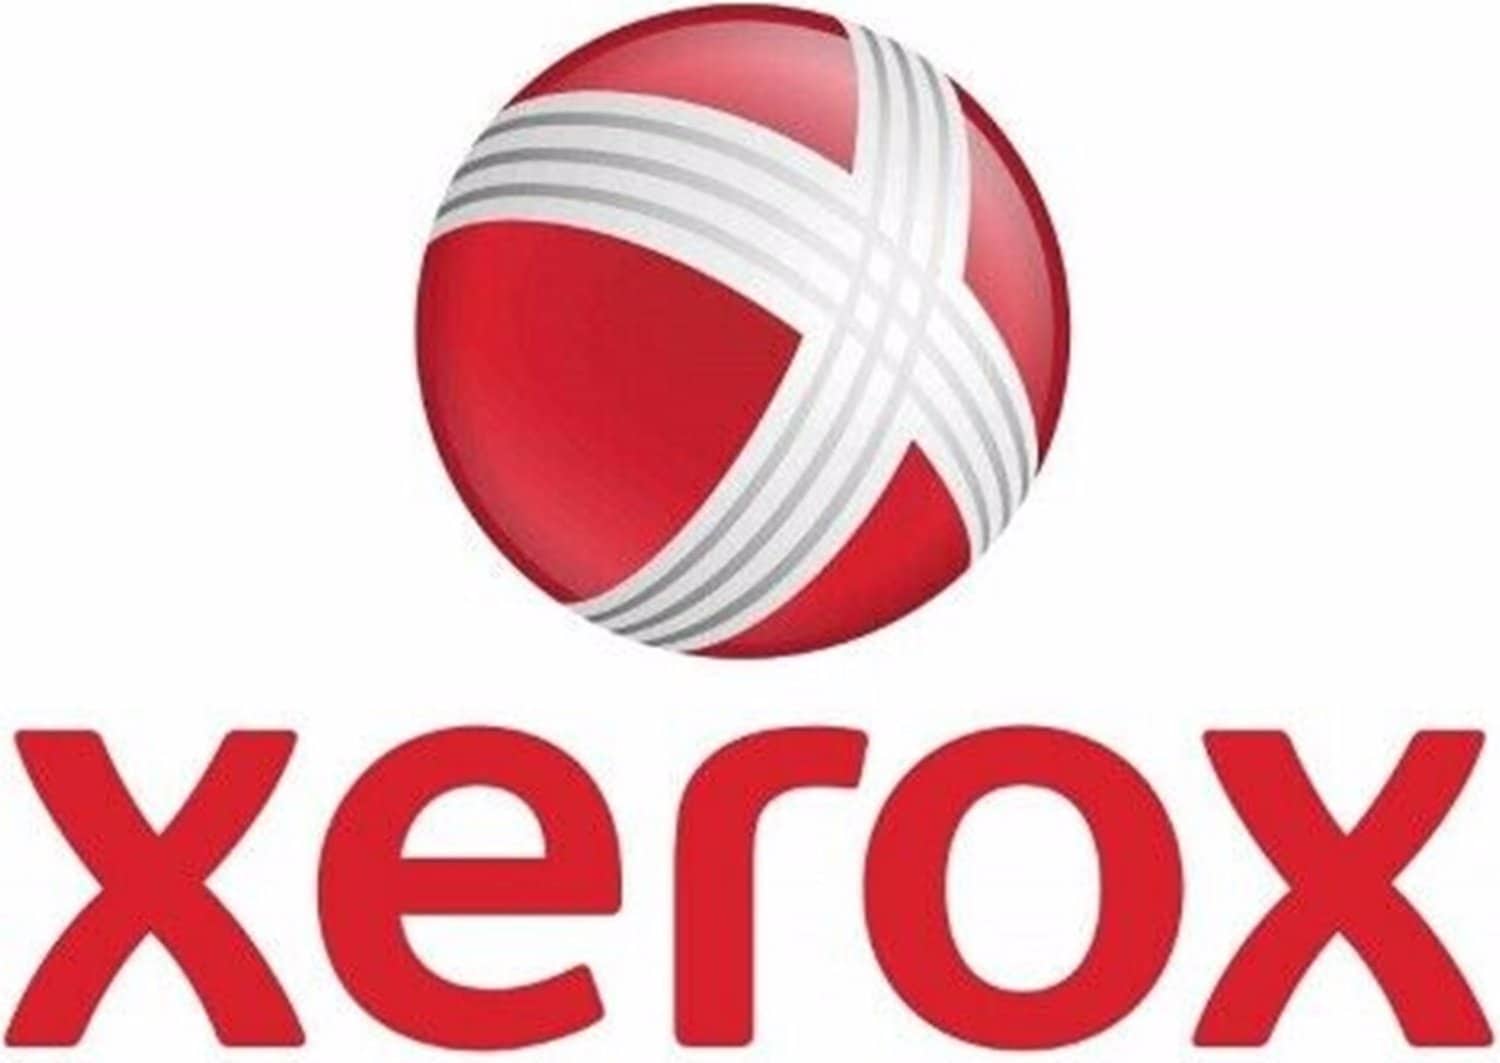 Xerox XV180 PRESS PERFORMANCEPACKAGE kaufen